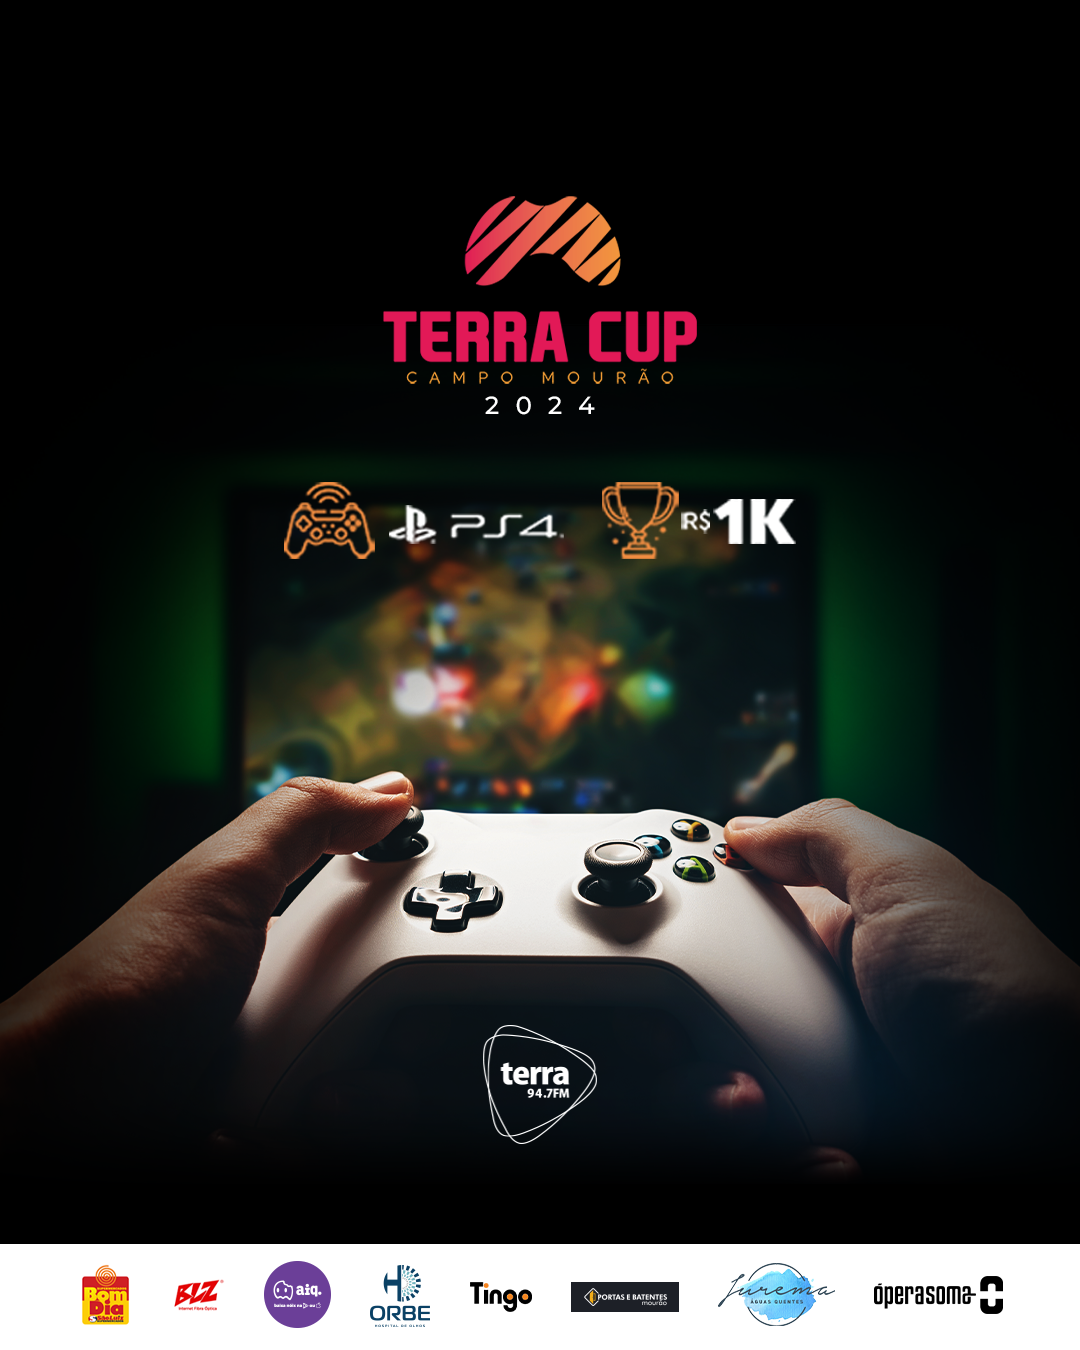 TERRA CUP 2024